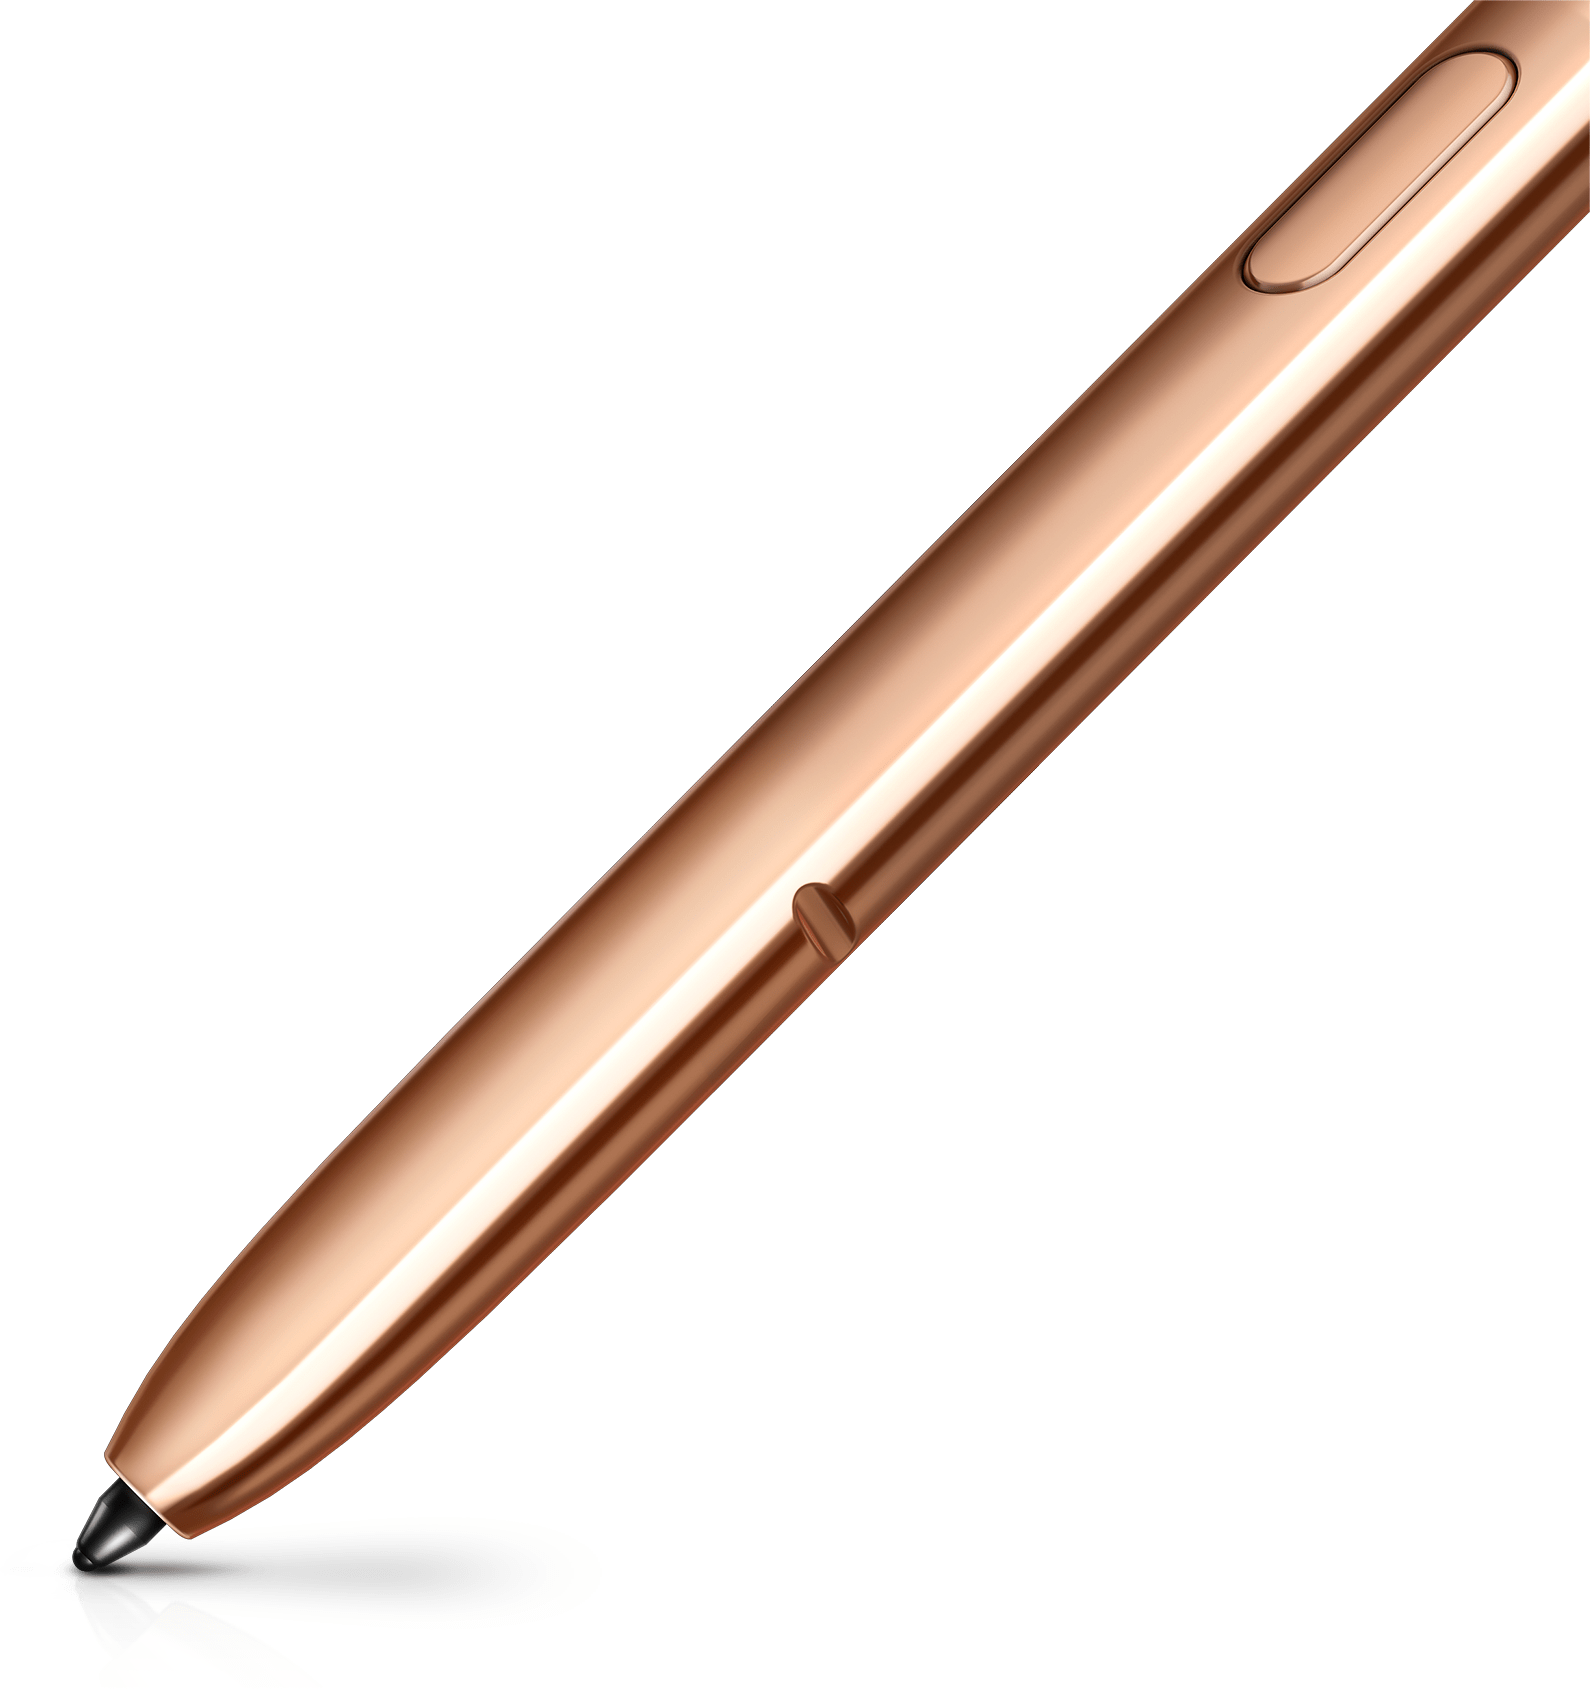 Imagem extremamente aproximada da parte inferior da S Pen bronze, exibindo sua ponta de precisão. Há um traço bronze que acompanha a ponta.